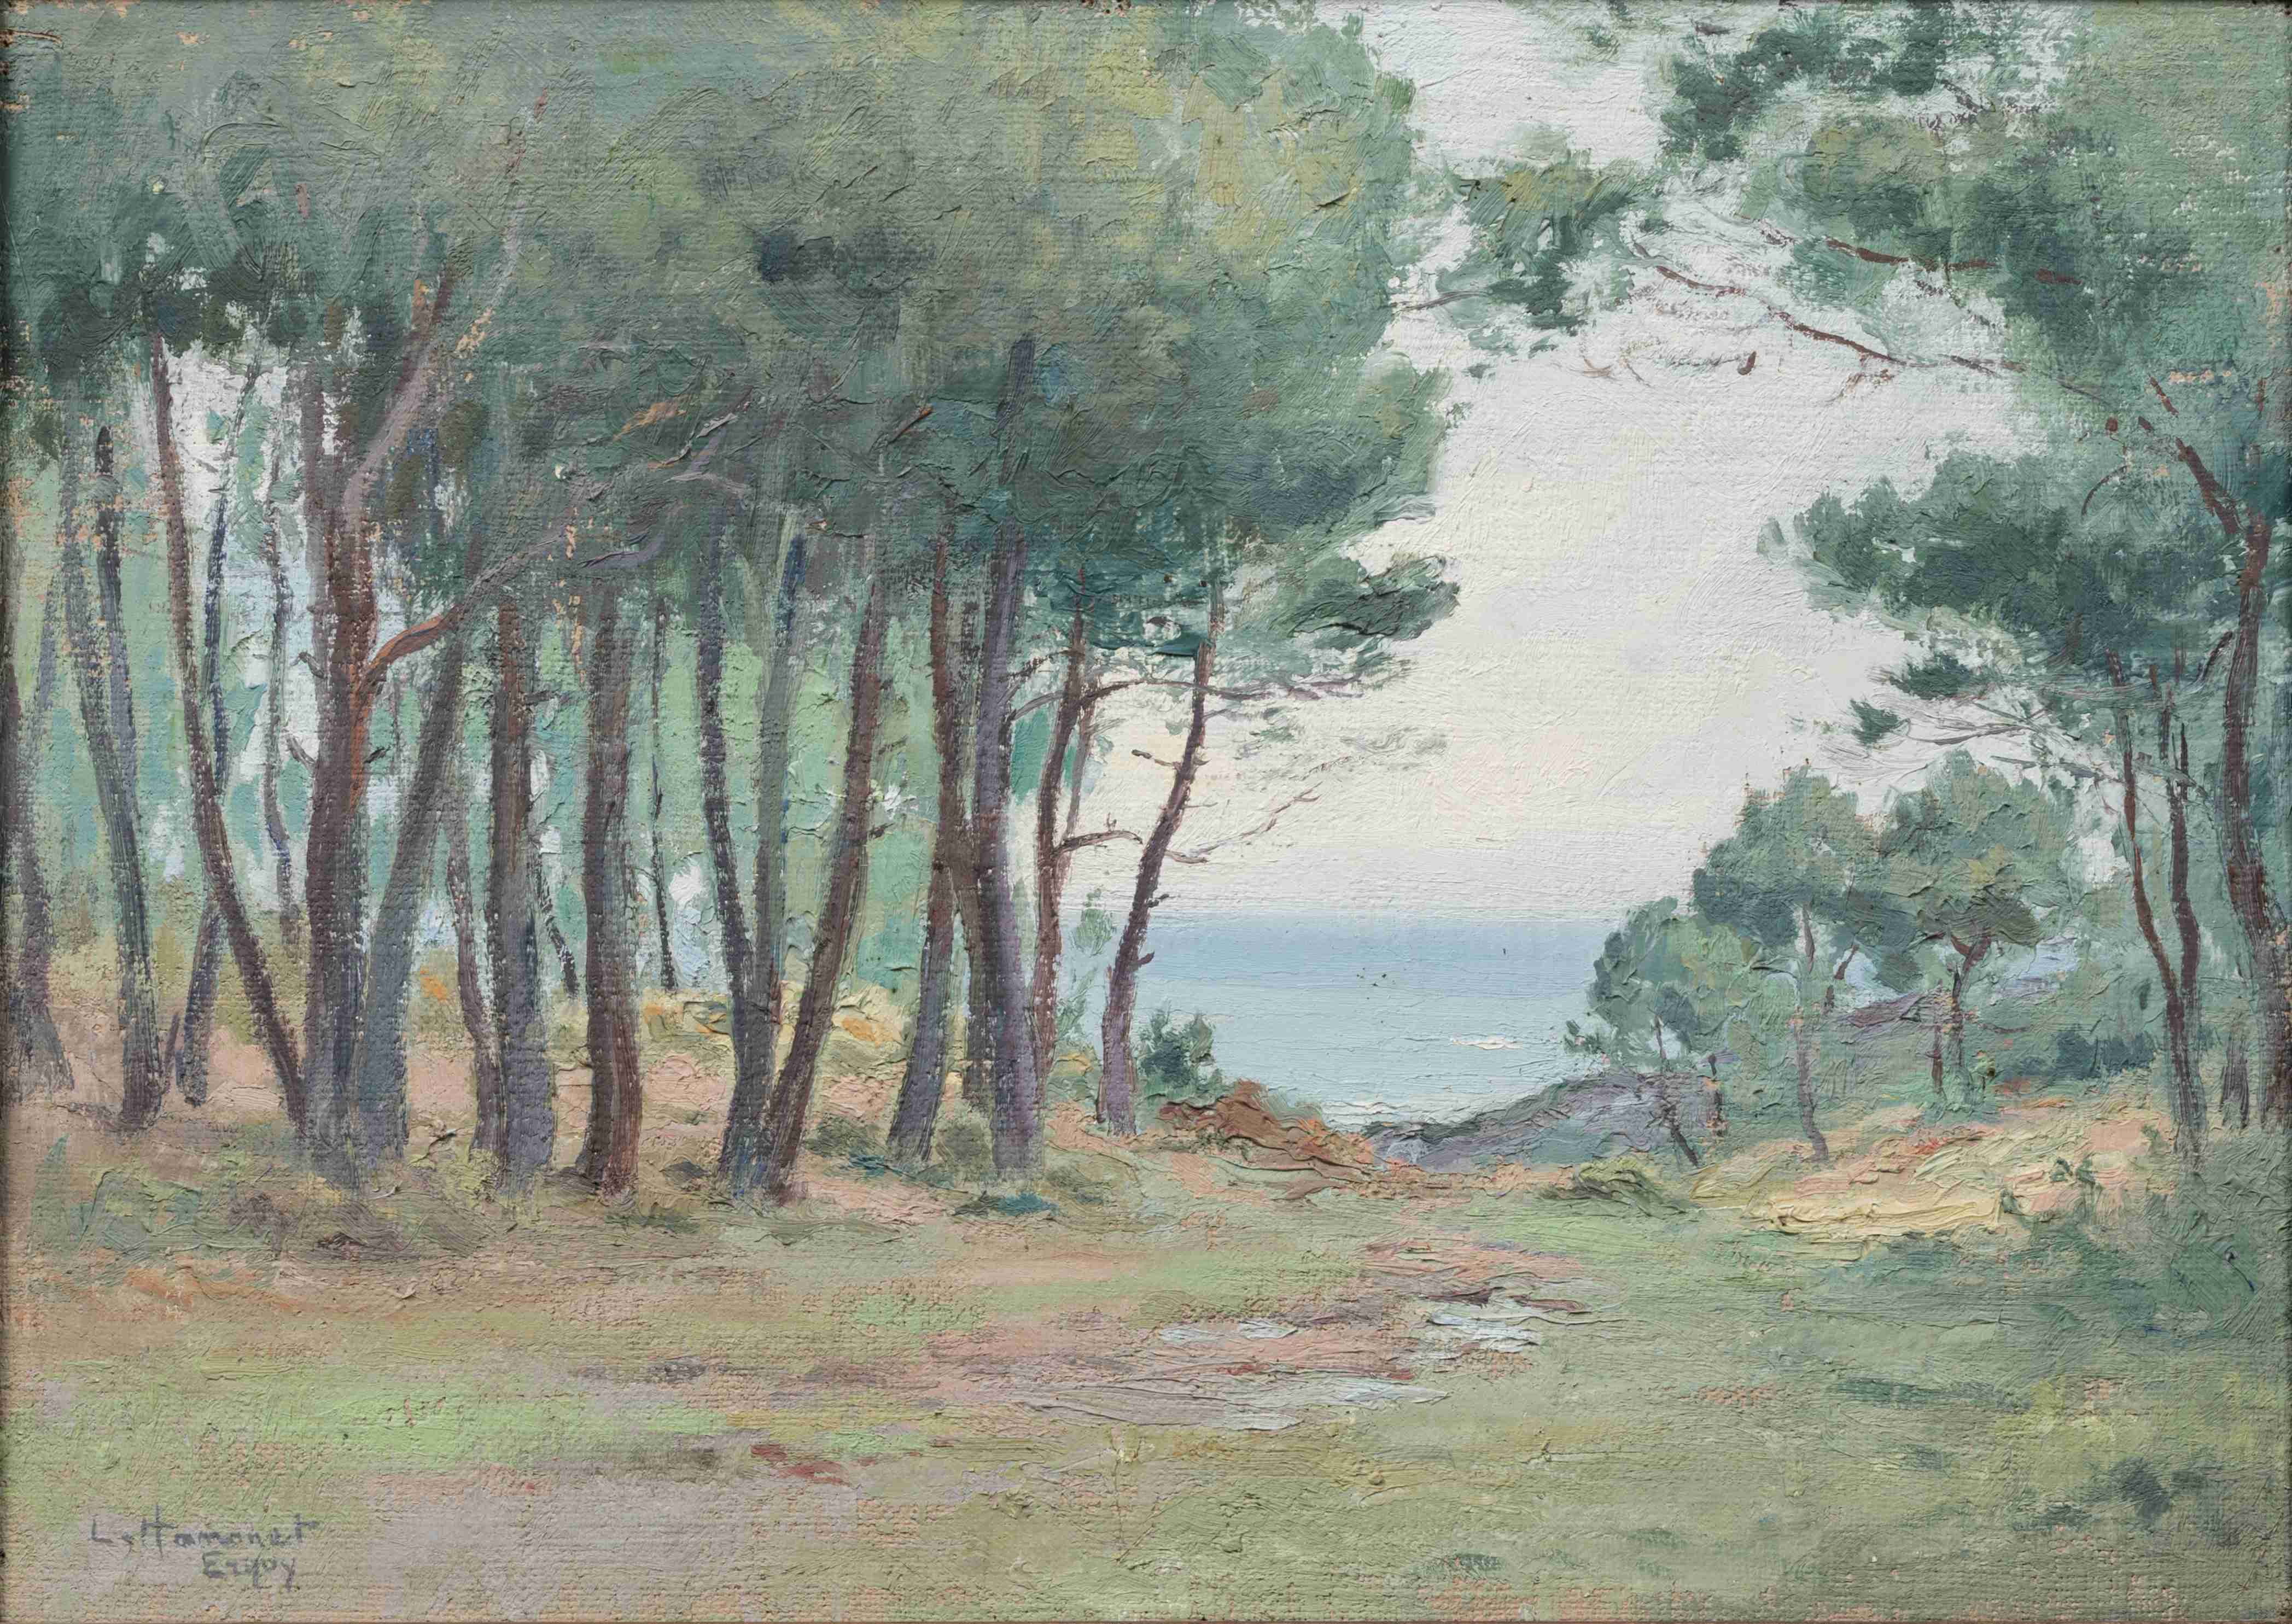 Léon HAMONET (Erquy, 1877 - Rennes, 1953)
"Erquy" - La descente...